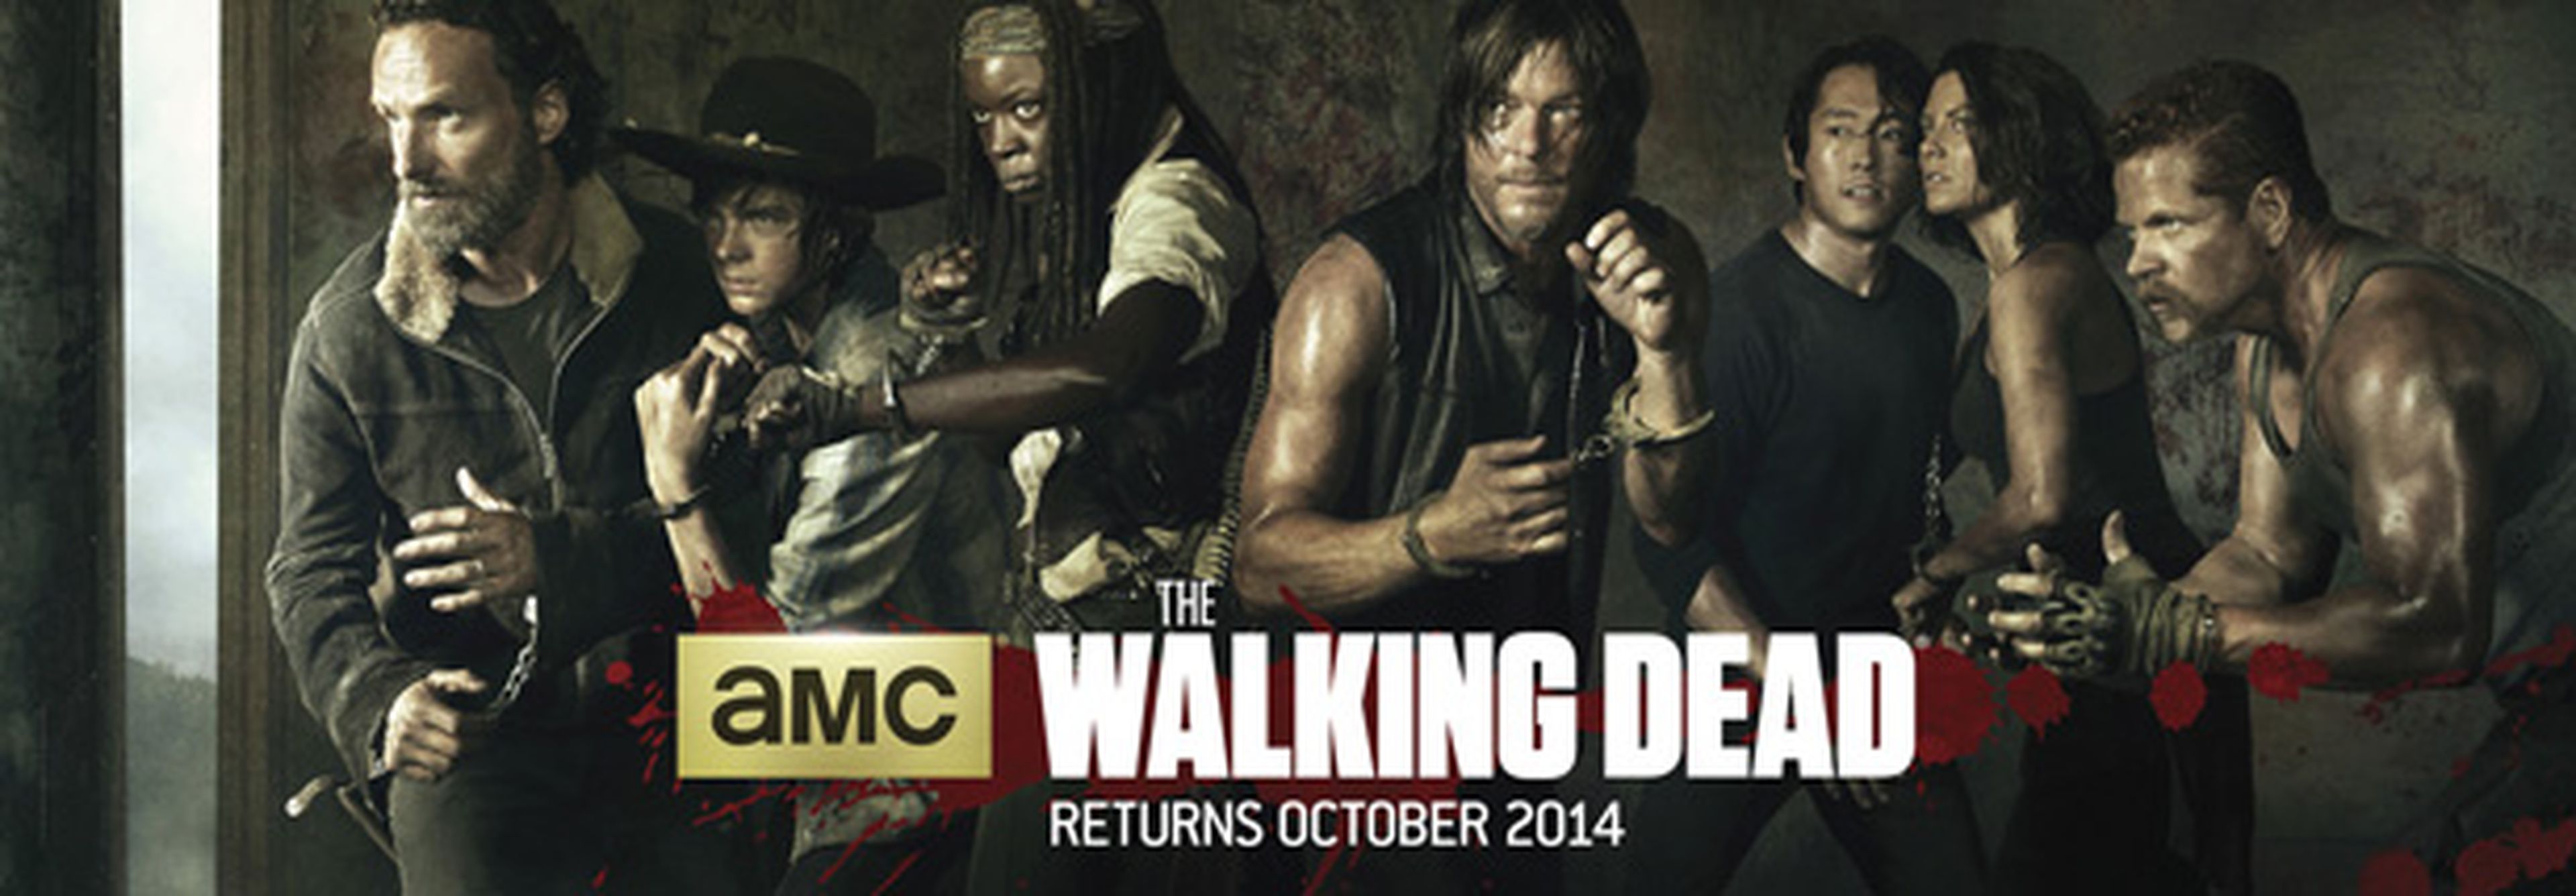 Ya es oficial: The Walking Dead anuncia la producción de su spin off